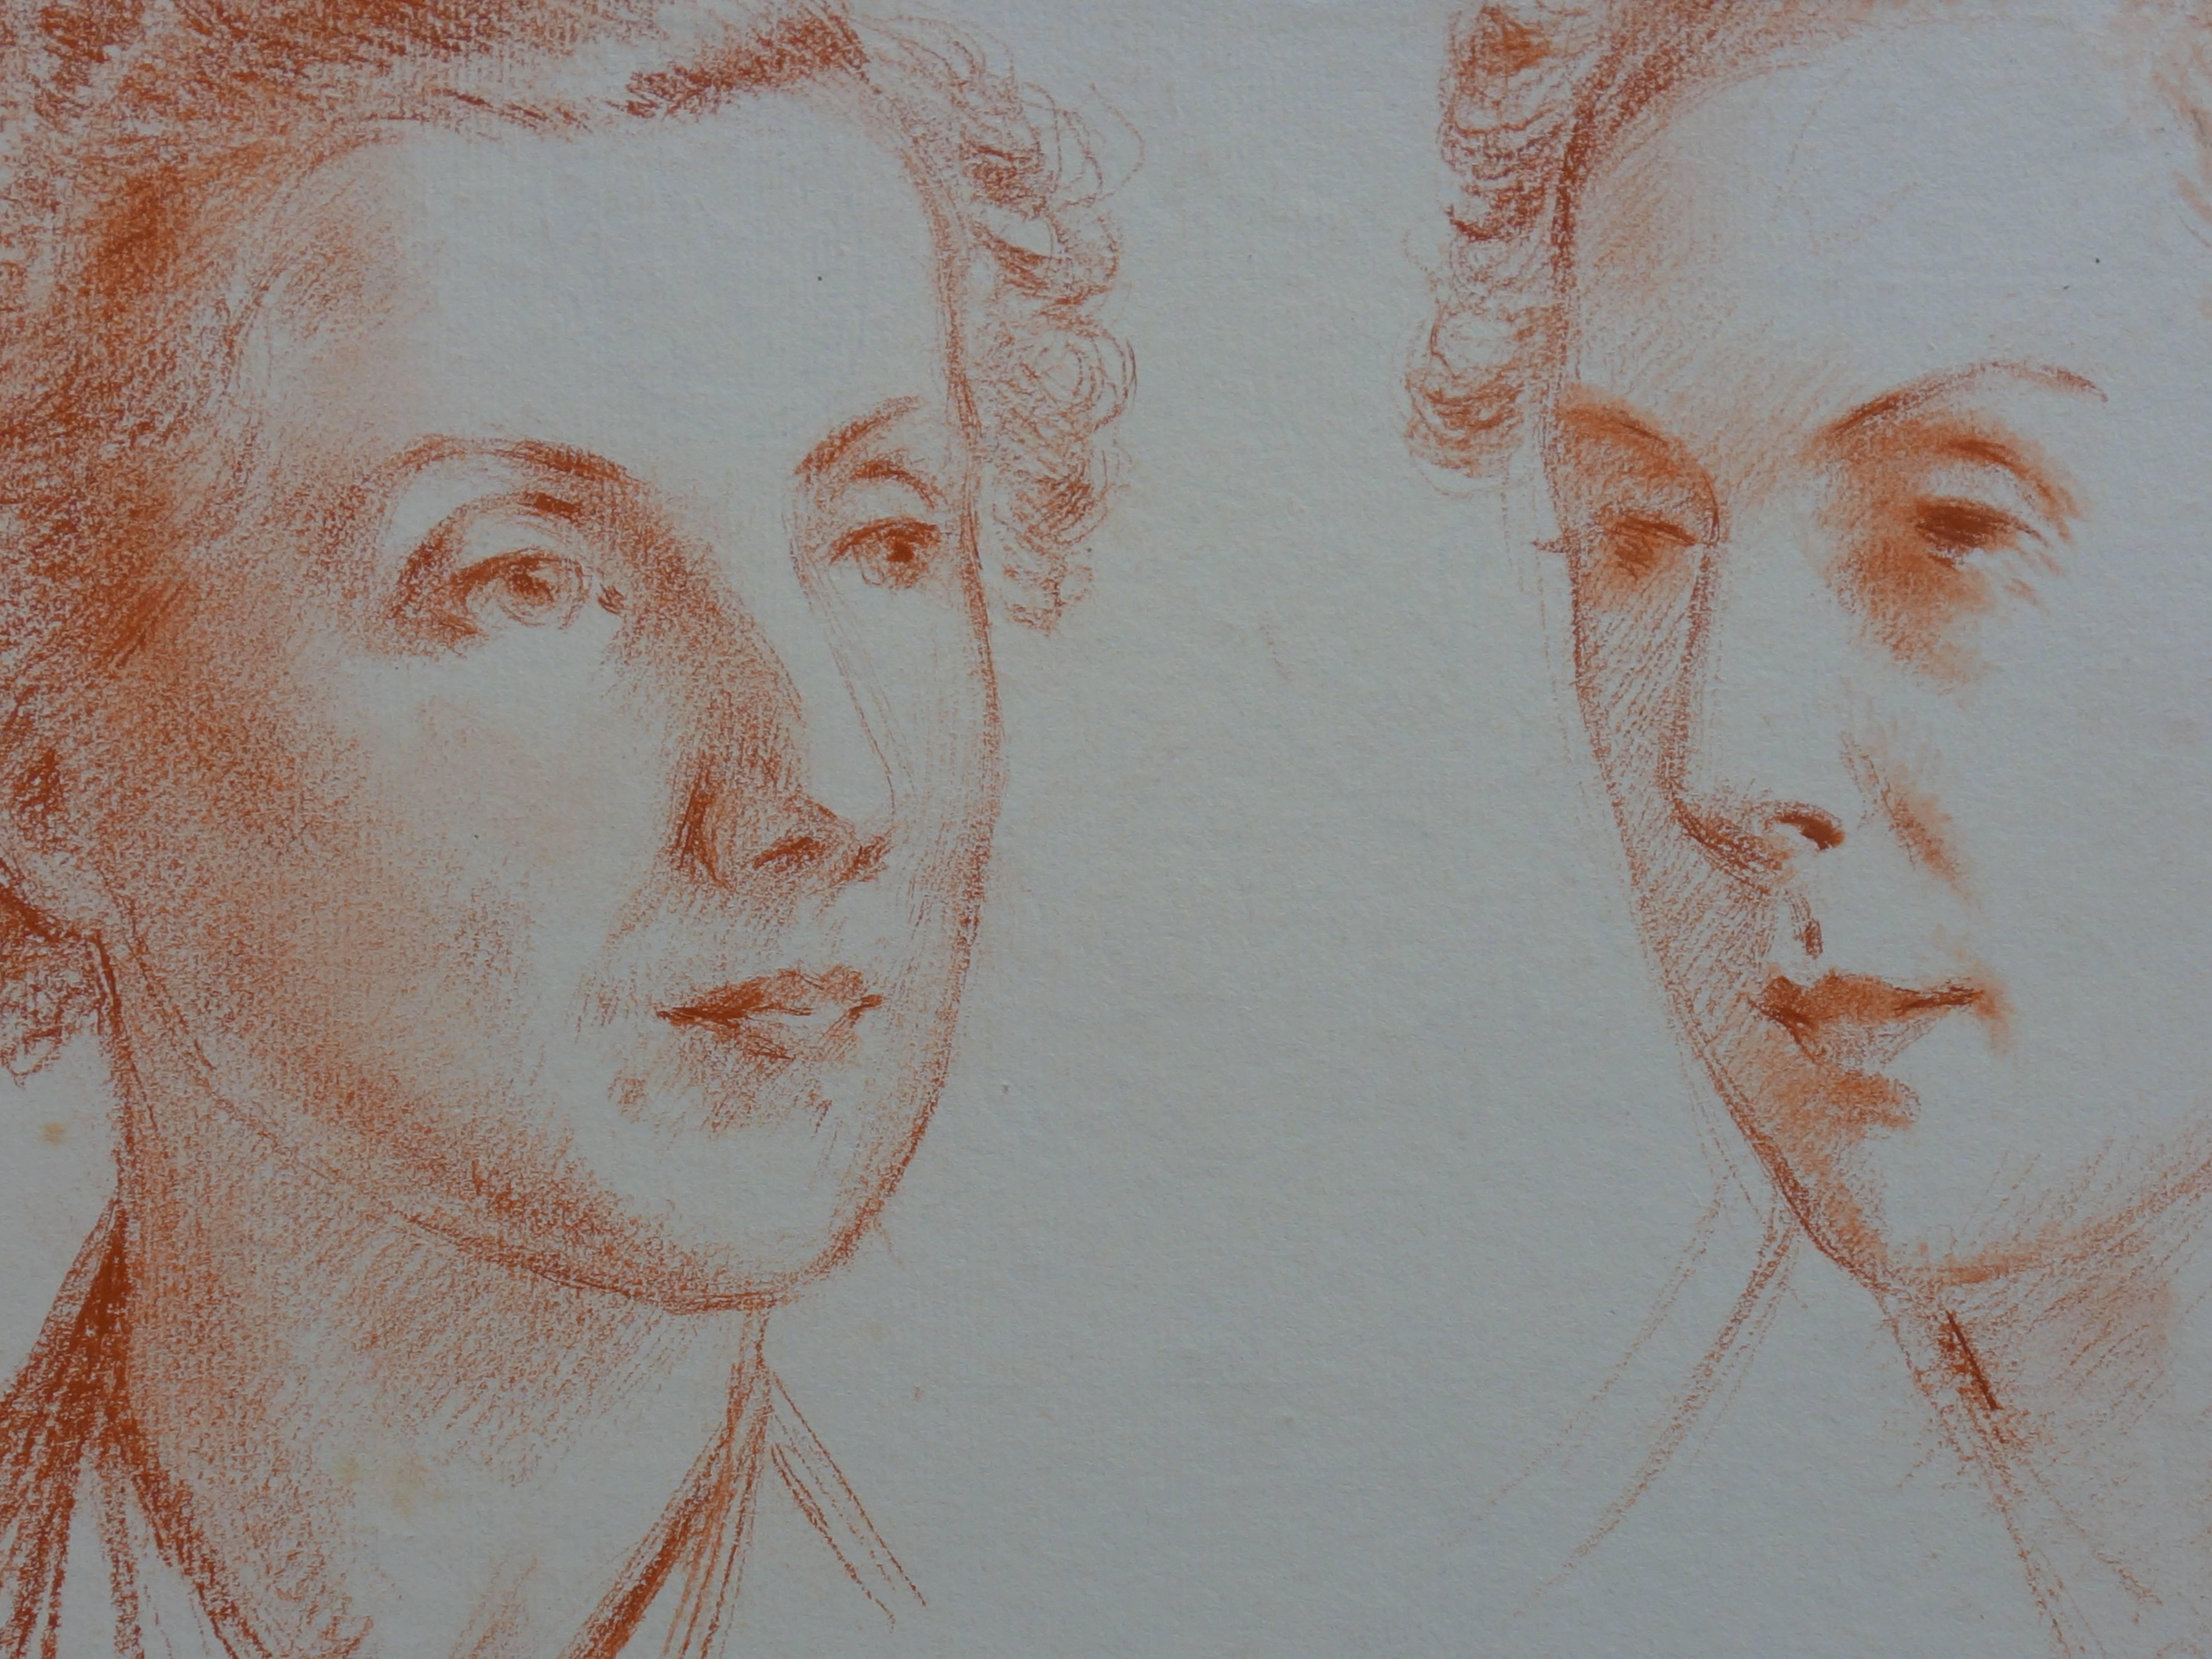 Deux études de profil de femme - Dessin original au fusain - Circa 1920 - Réalisme Art par Gustave Poetzsch